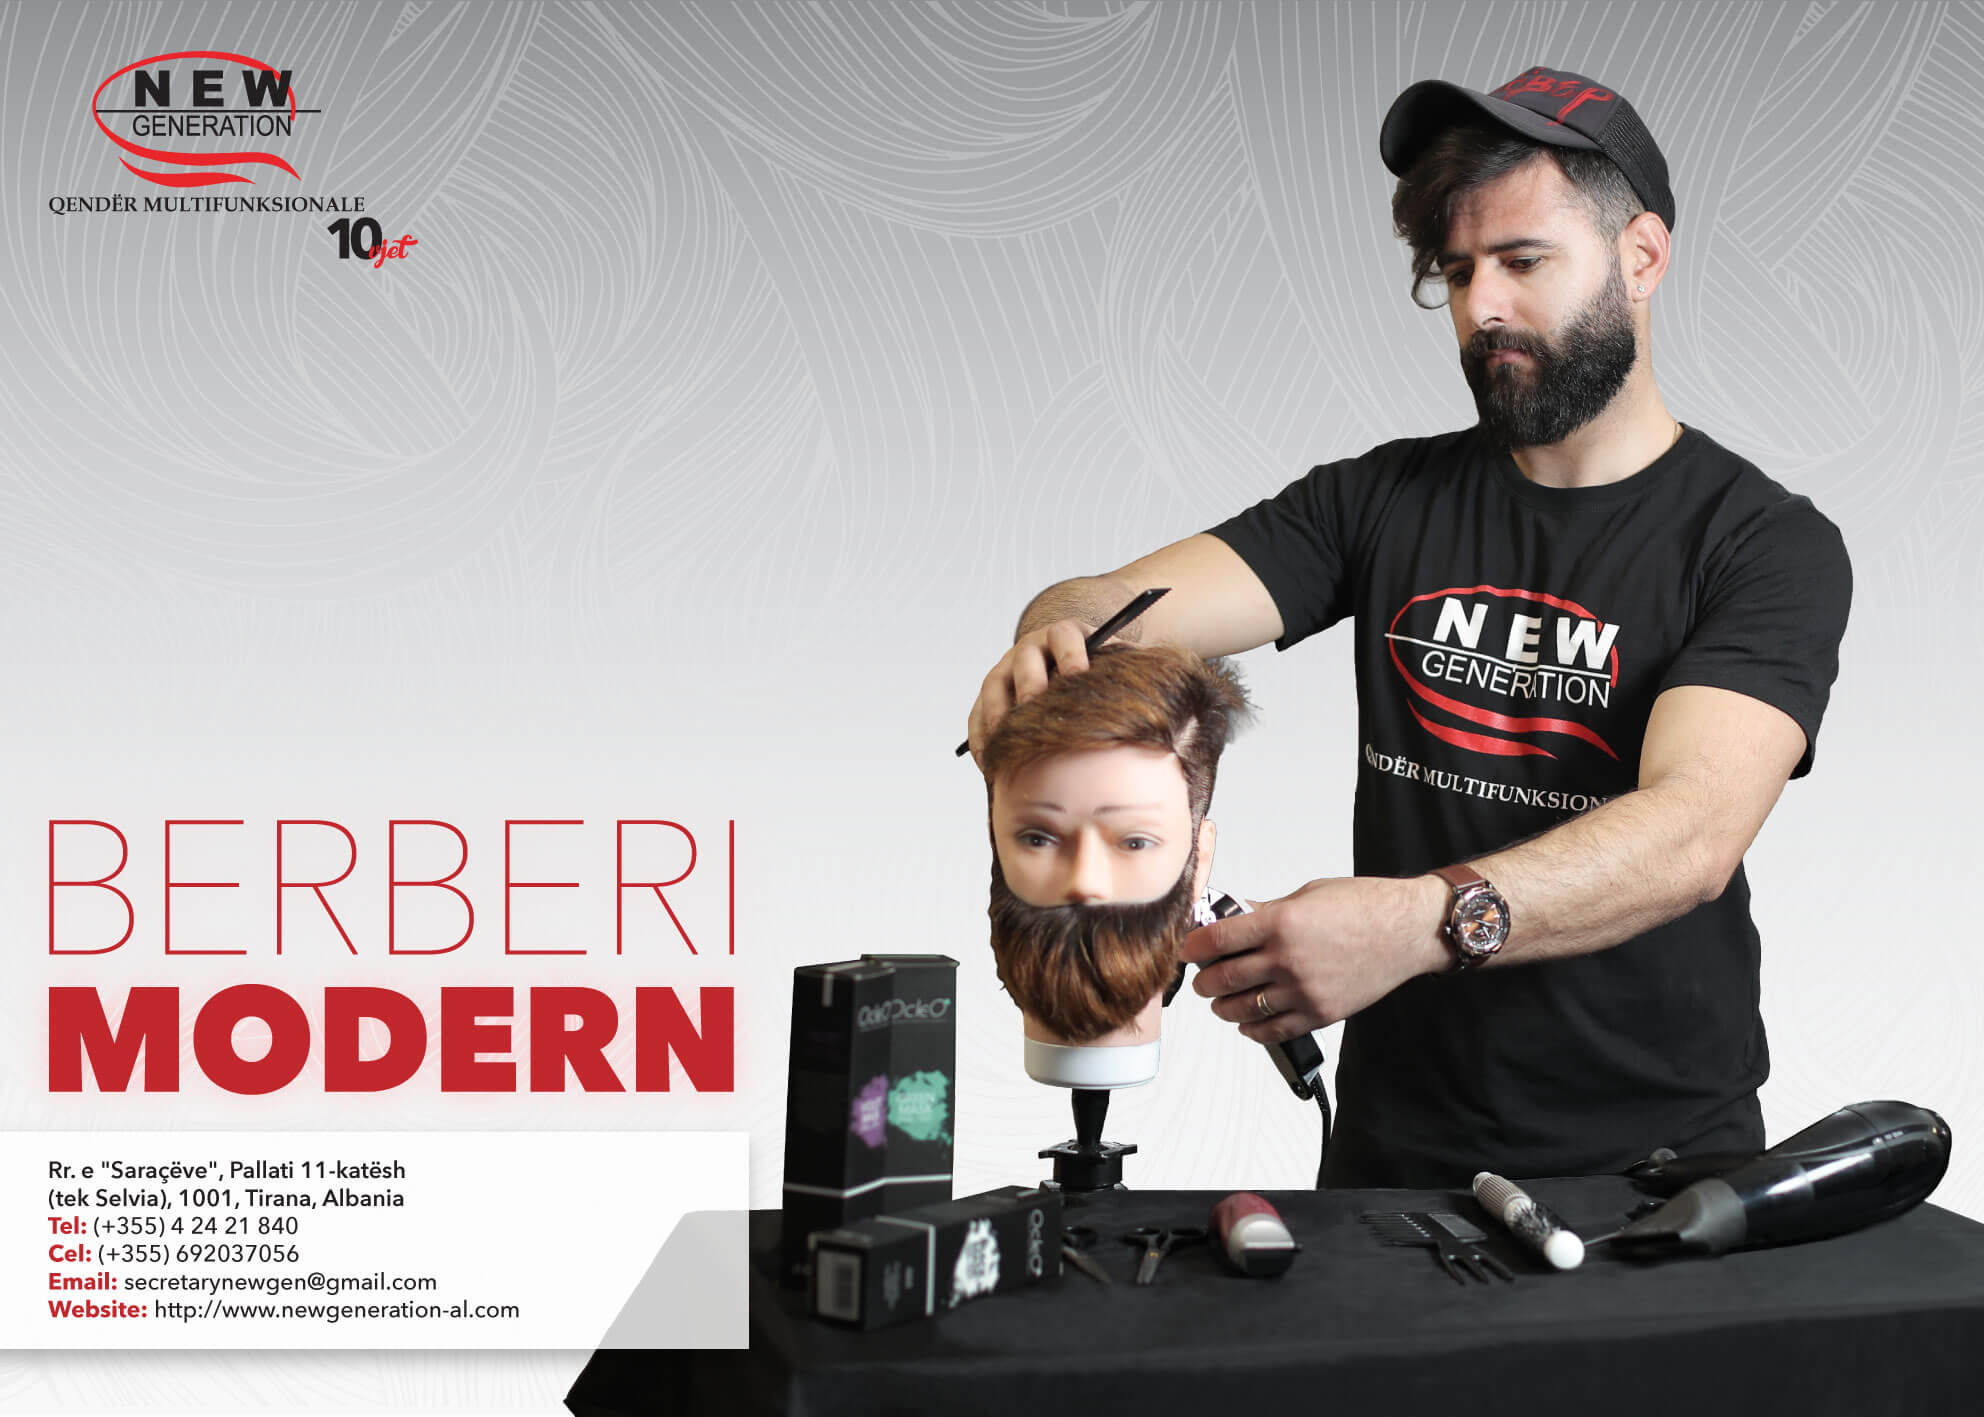 Modern barber